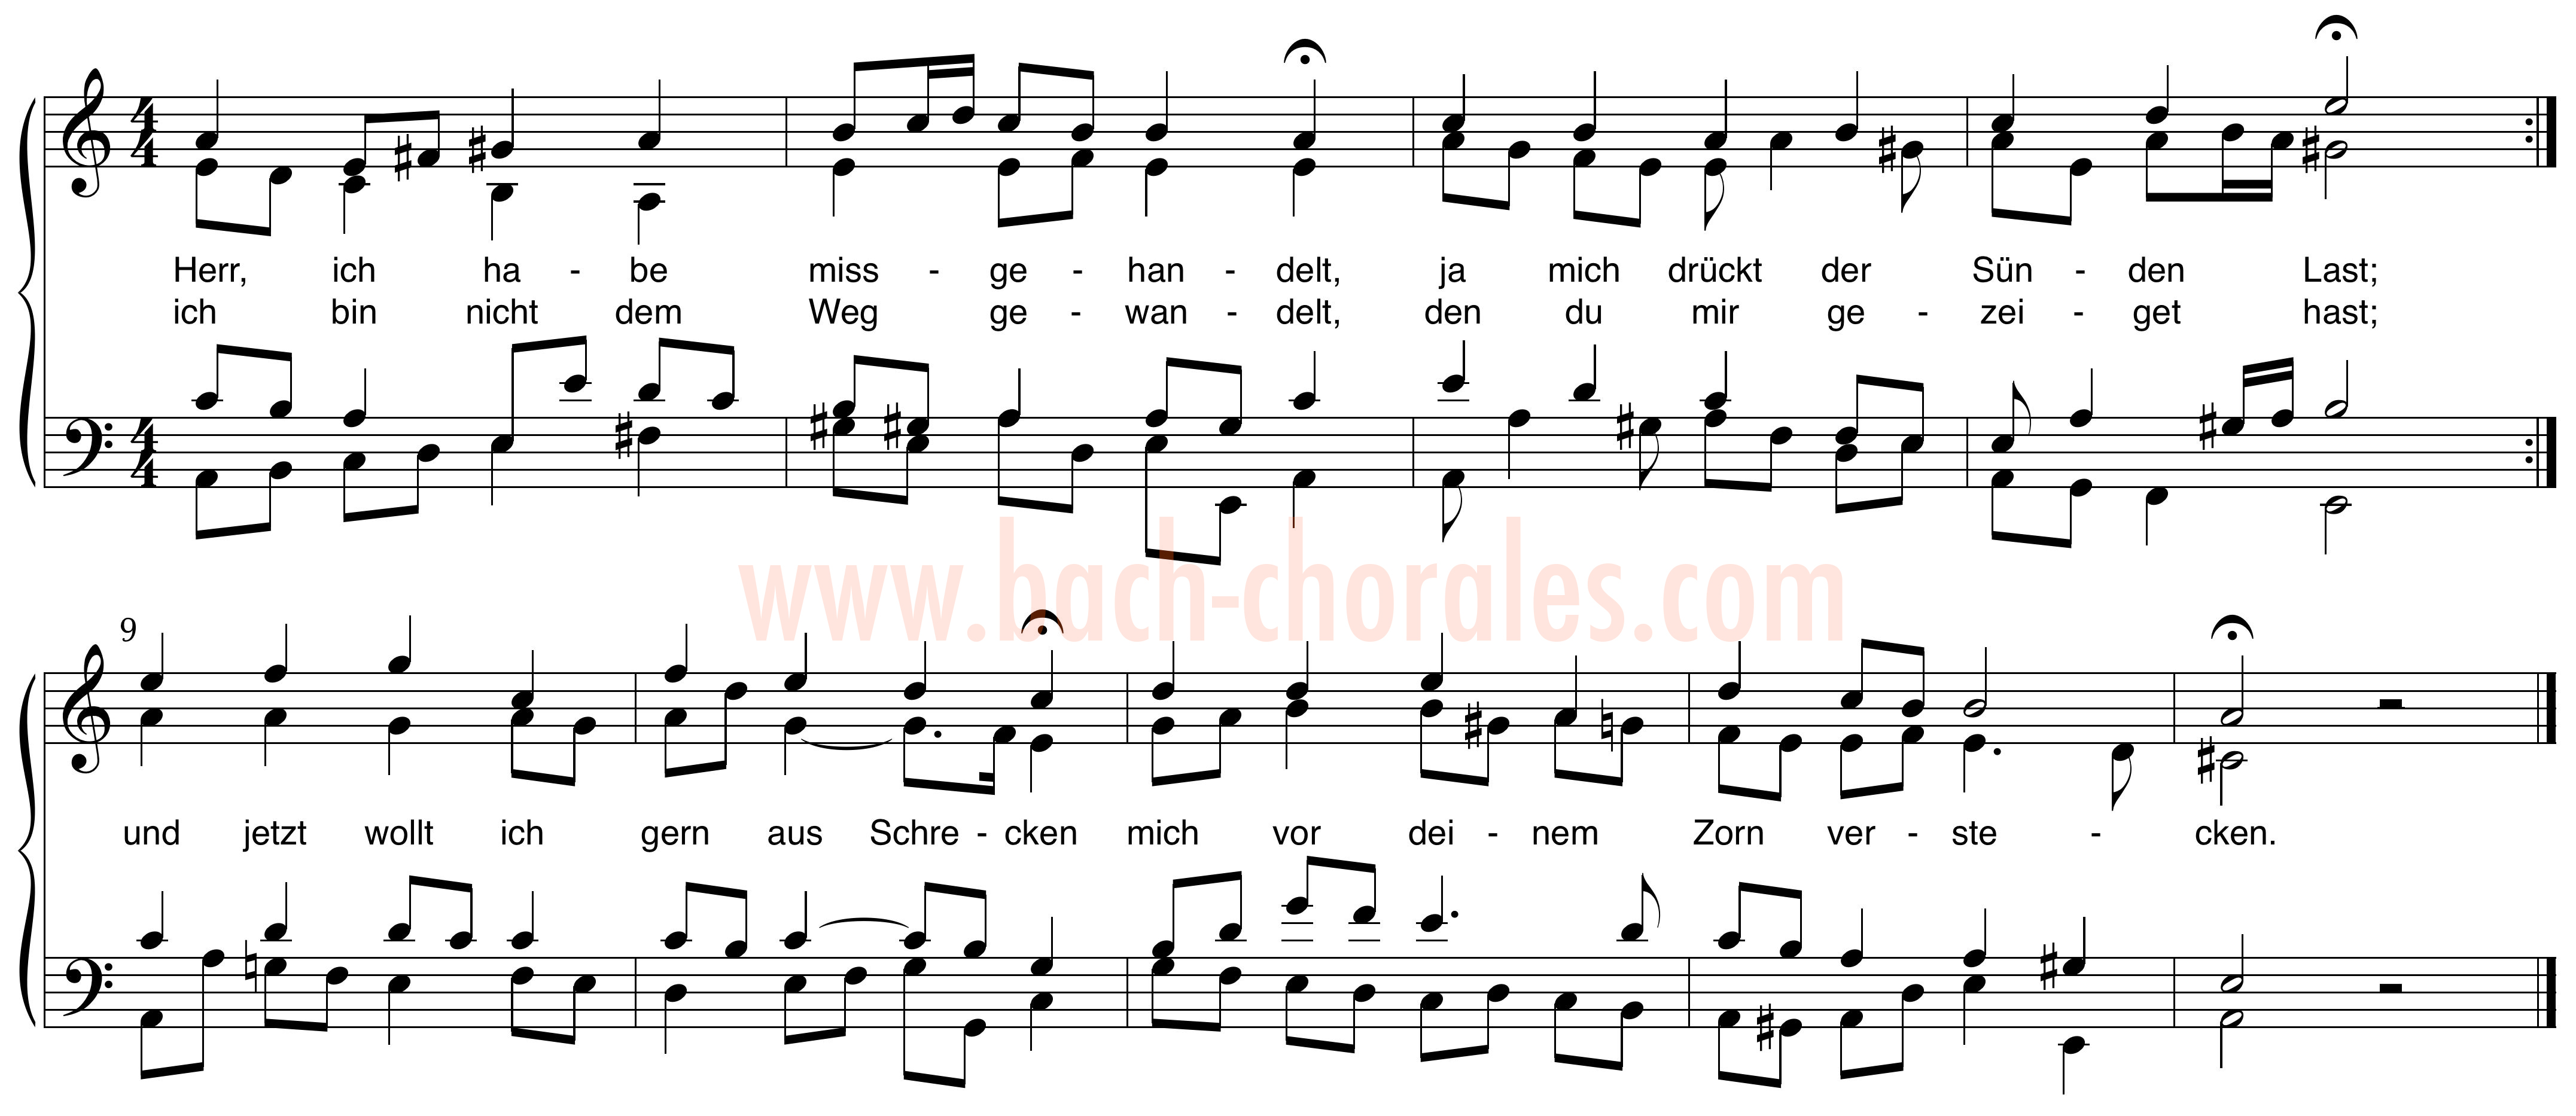 notenbeeld BWV 330 op https://www.bach-chorales.com/